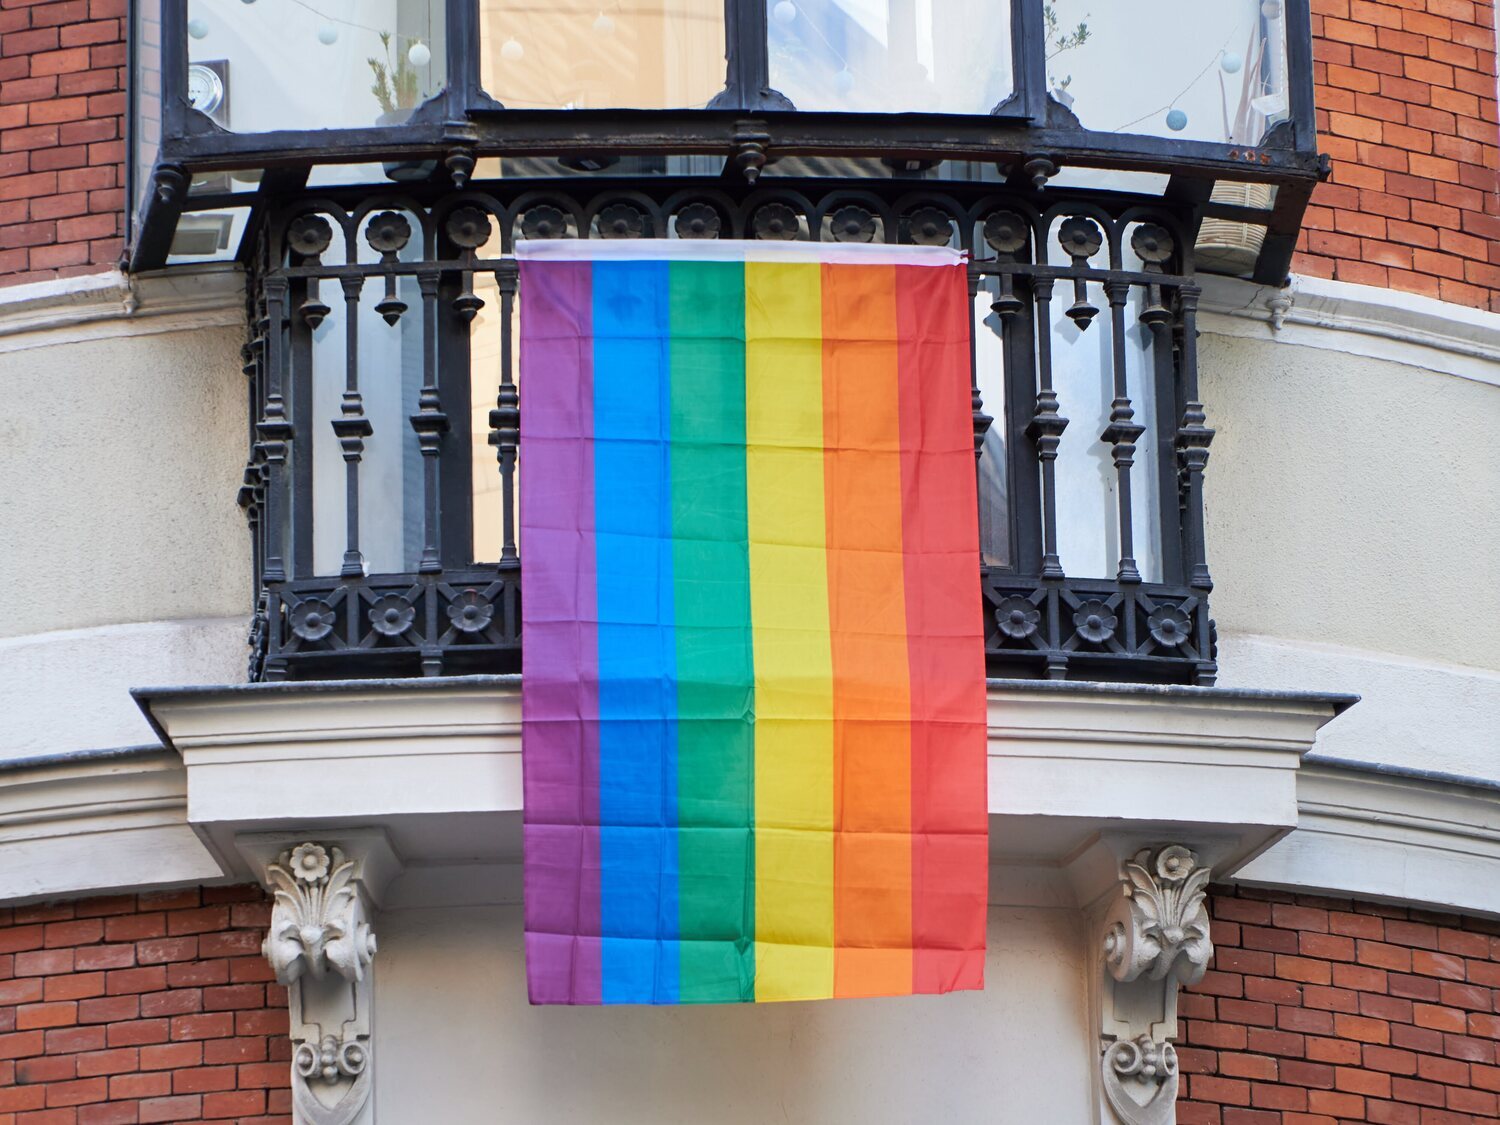 Una pareja lesbiana es acosada por lucir la bandera LGTBI: "La unión de hombre y mujer es lo natural"